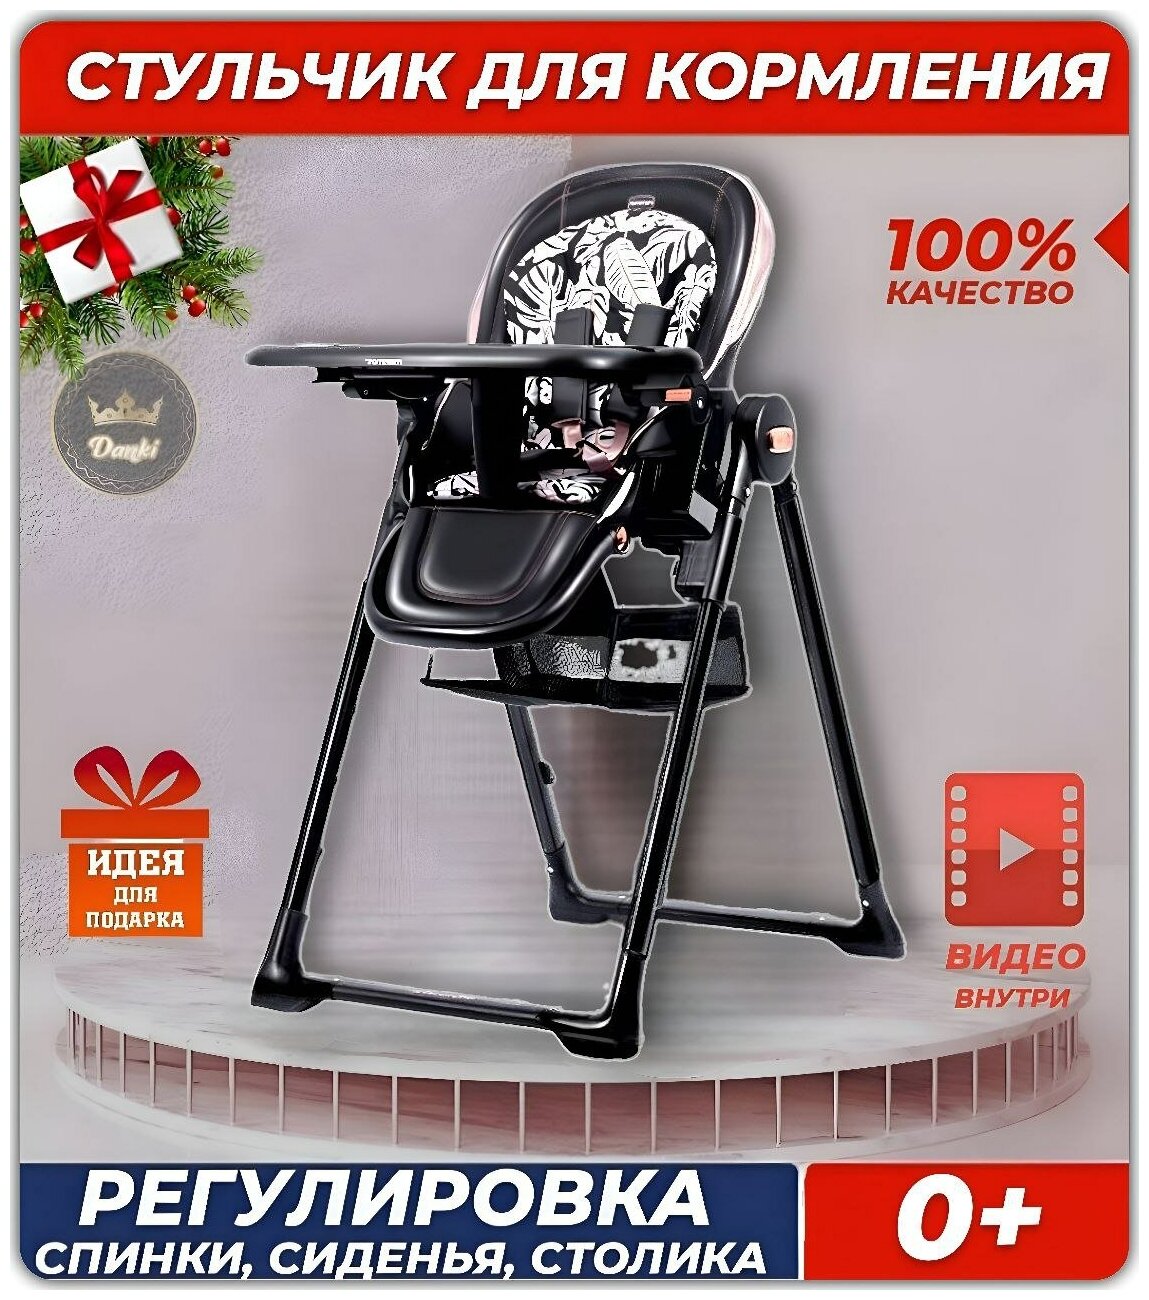 Стульчик для кормления ребенка Danki Elite детский складной стульчик 0 + цвет Черный